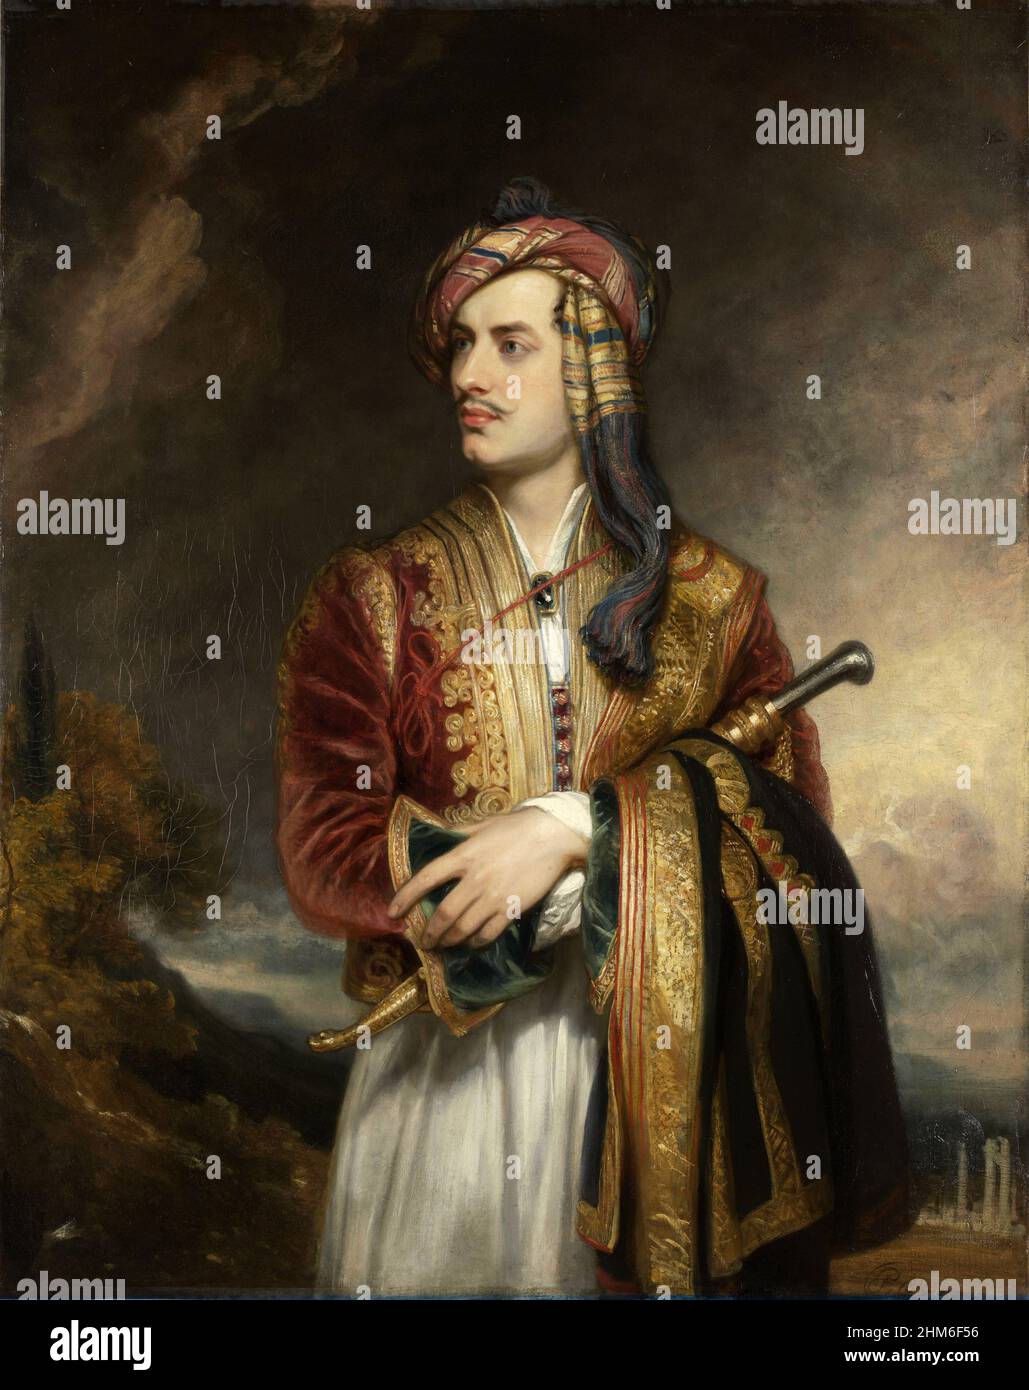 Ein Porträt des englischen Dichters Lord Byron (voller Name George Gordon Byron, 6th Baron Byron) in albanischem Kleidgemälde von Thomas Phillips. Stockfoto